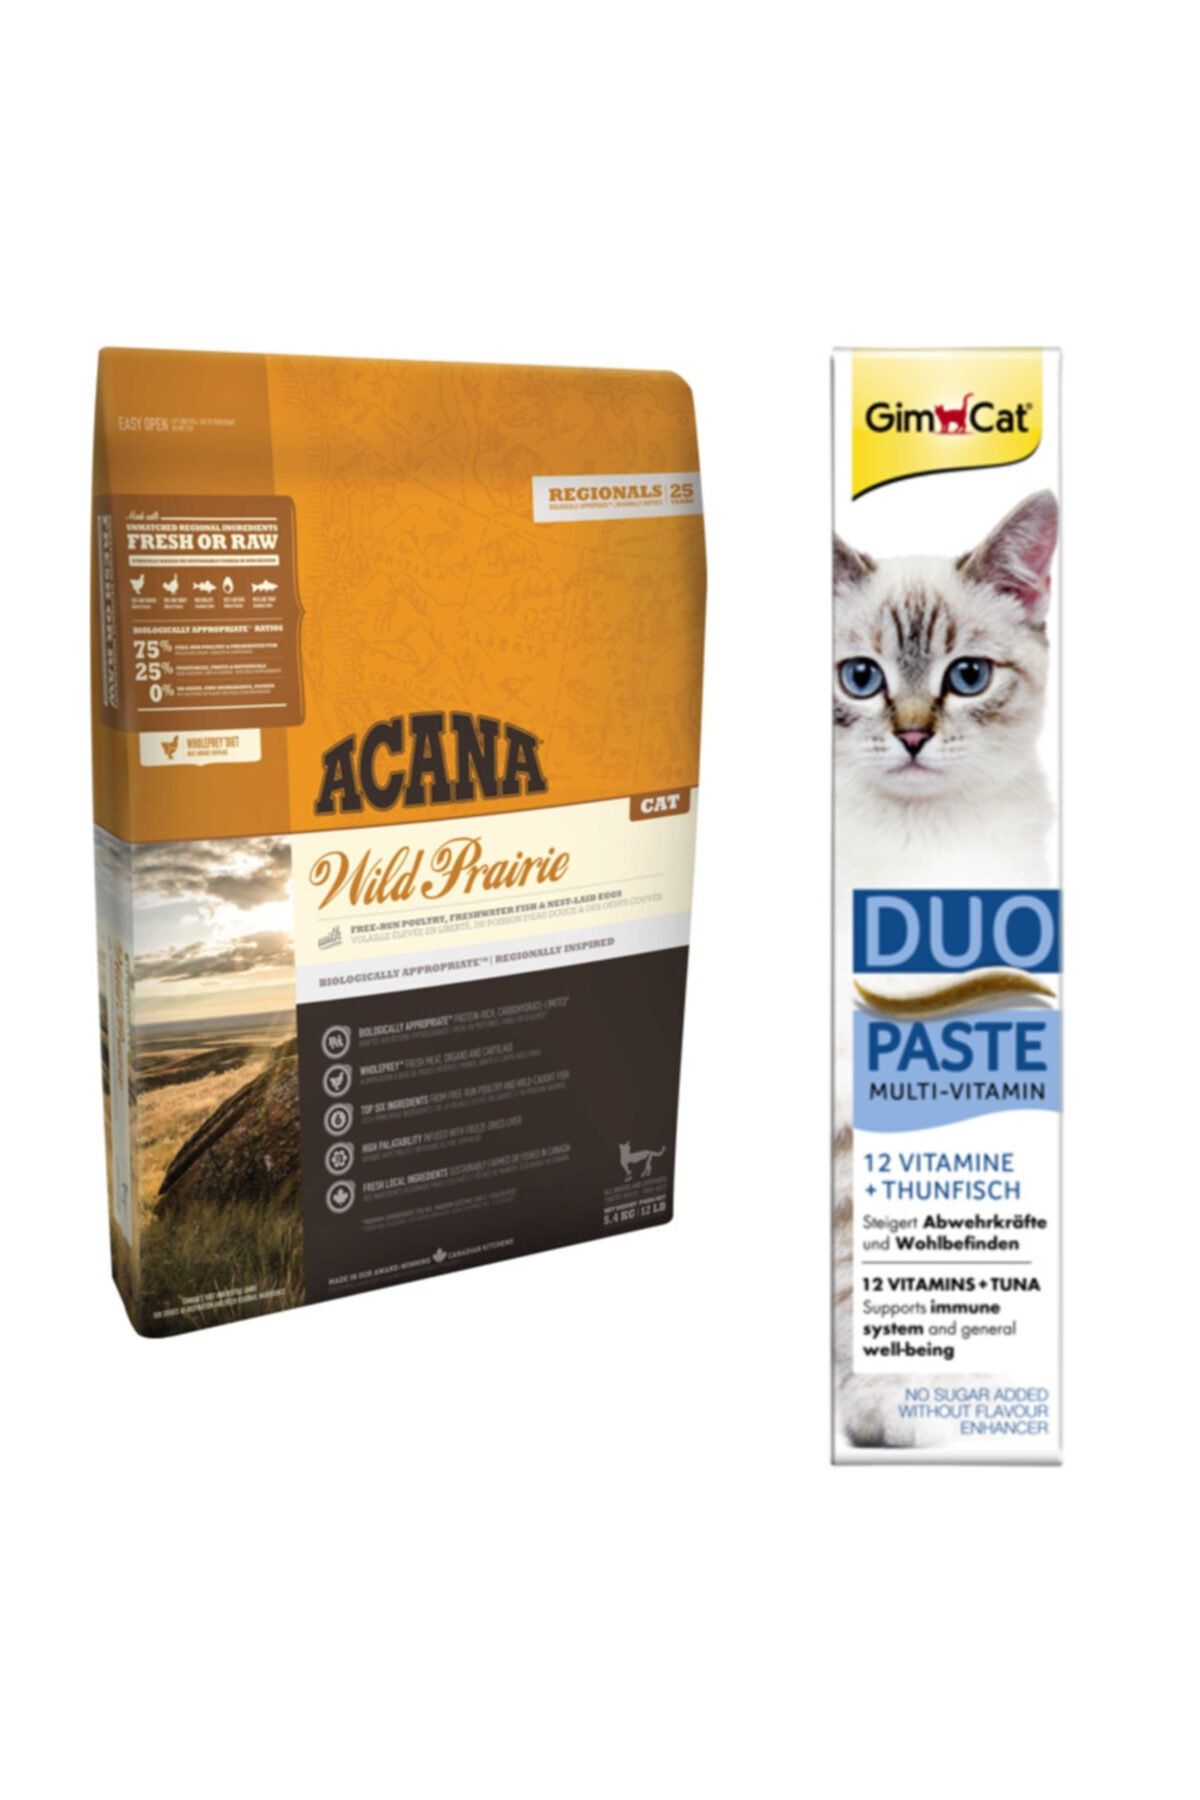 Acana Wild Prairie Kedi Maması 1,8 Kg + Gimcat Duo Paste Tuna Balıklı Multi Vitamin 50gr